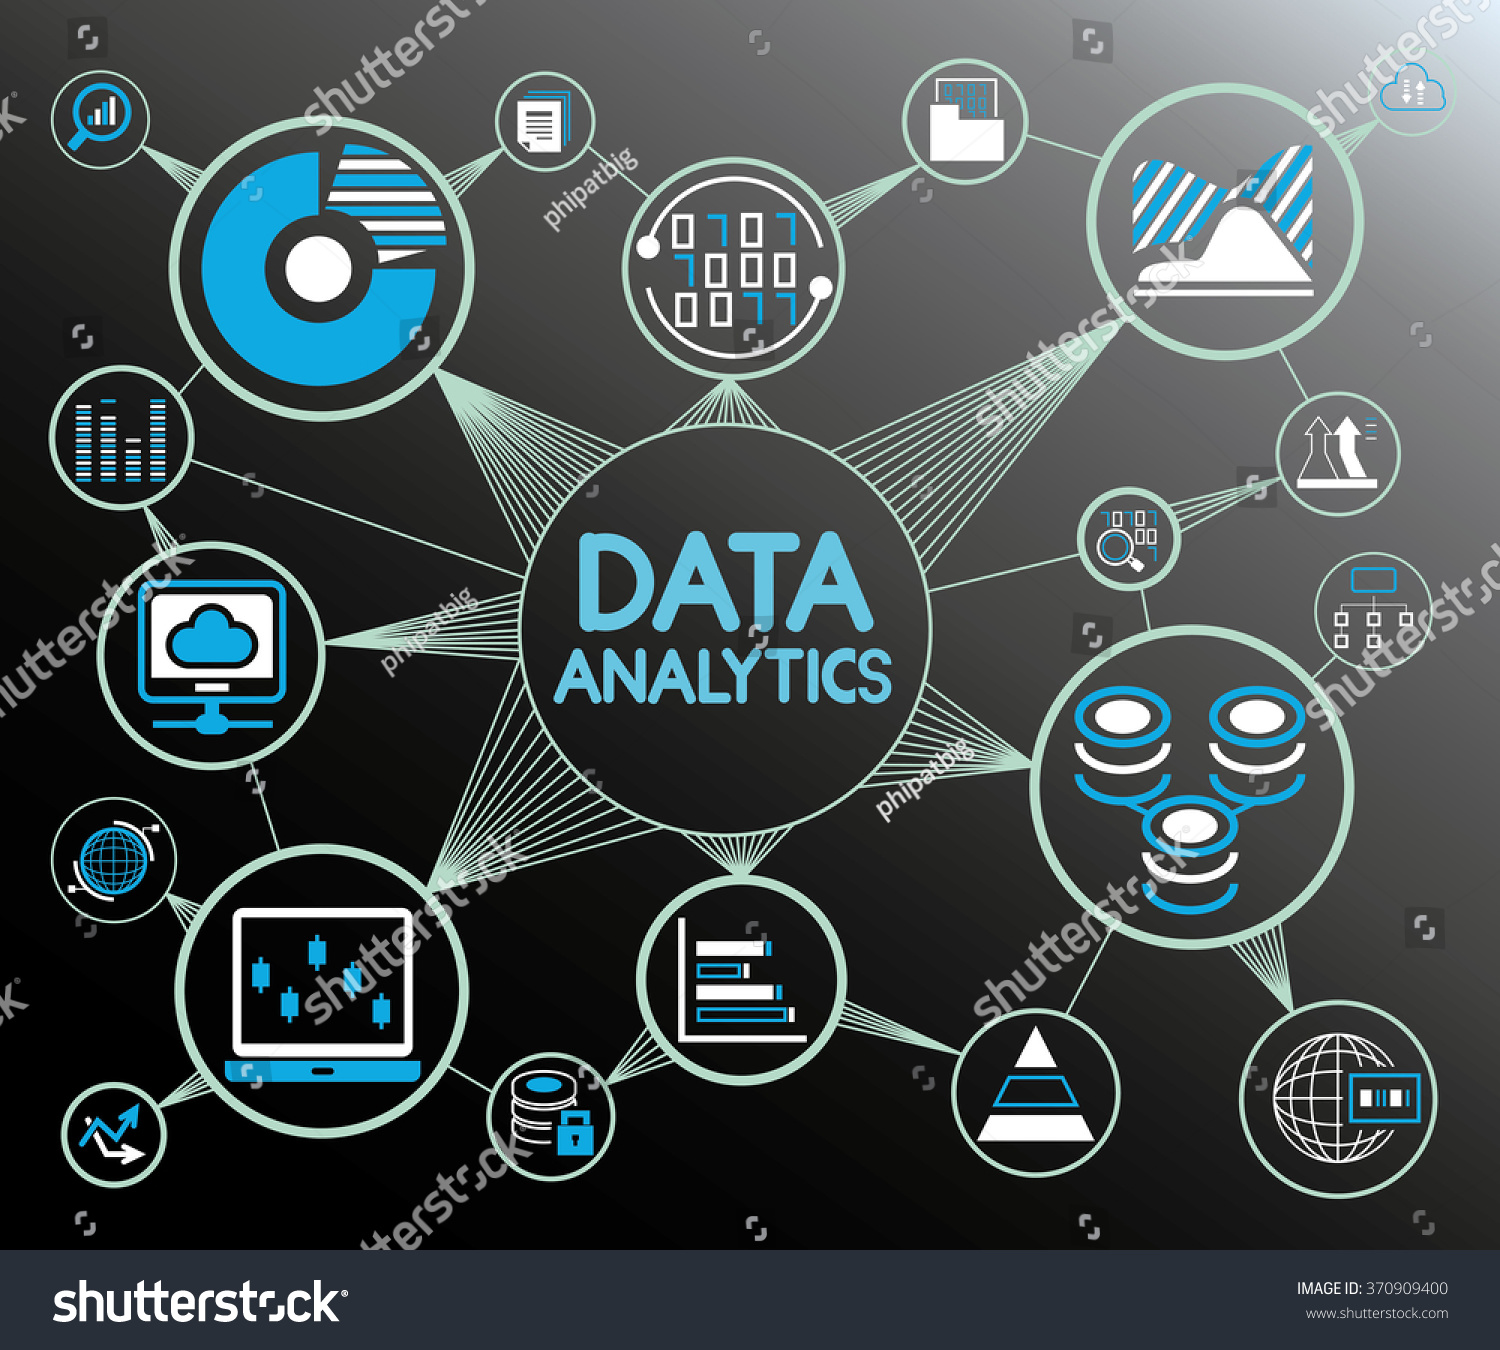 Data Analytics Network Background, Data Analytics Icons ...